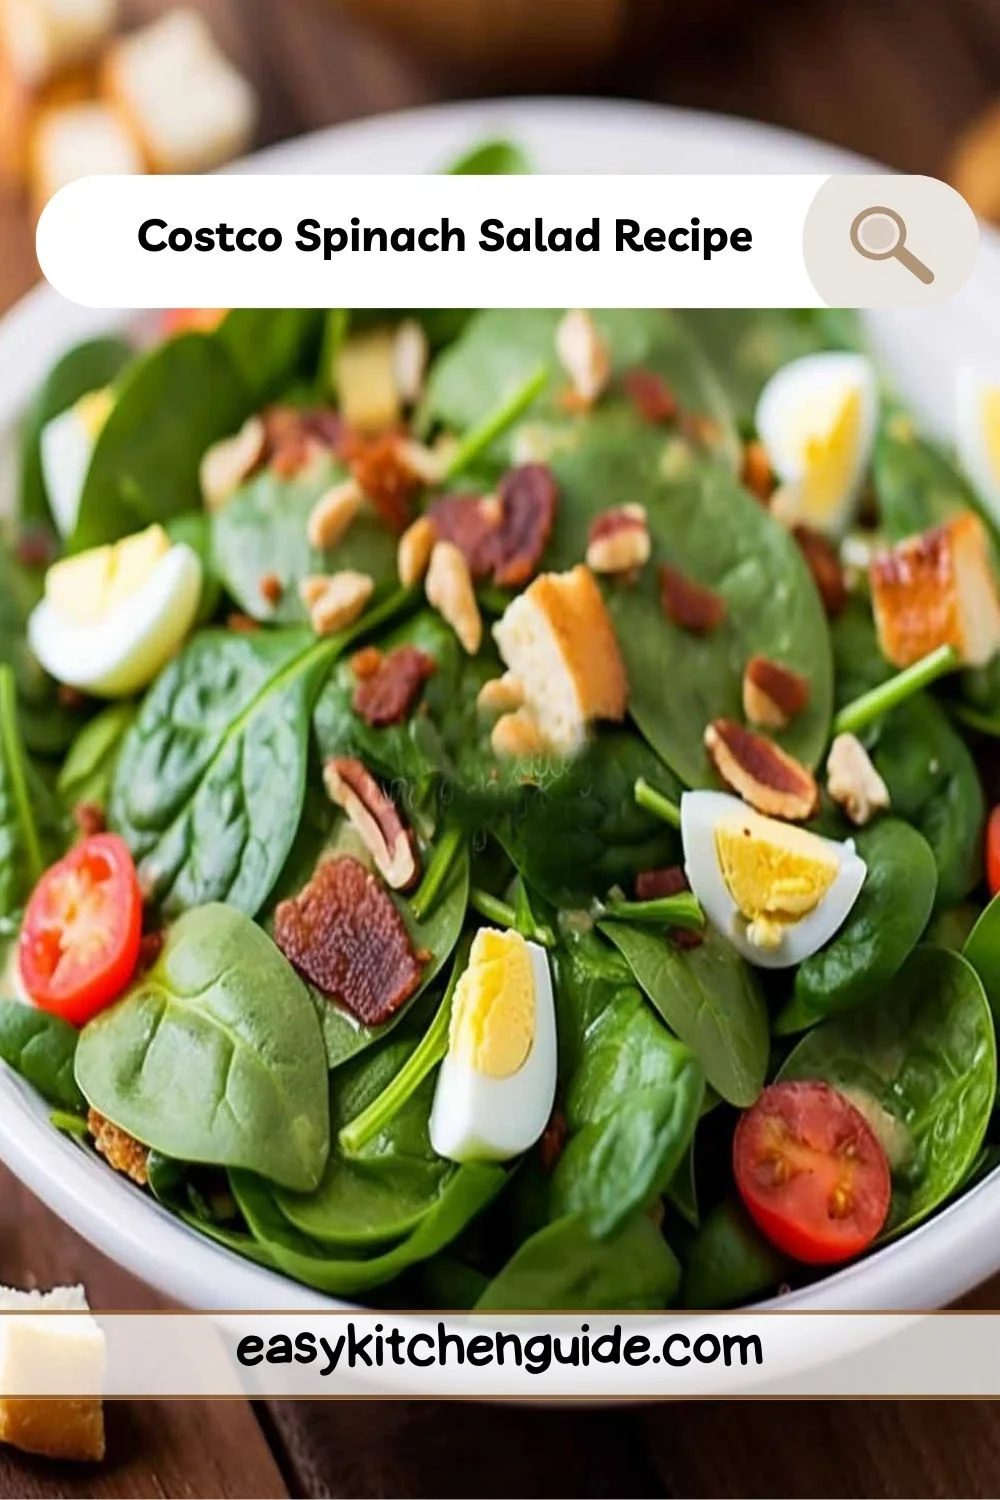 Costco Spinach Salad Recipe